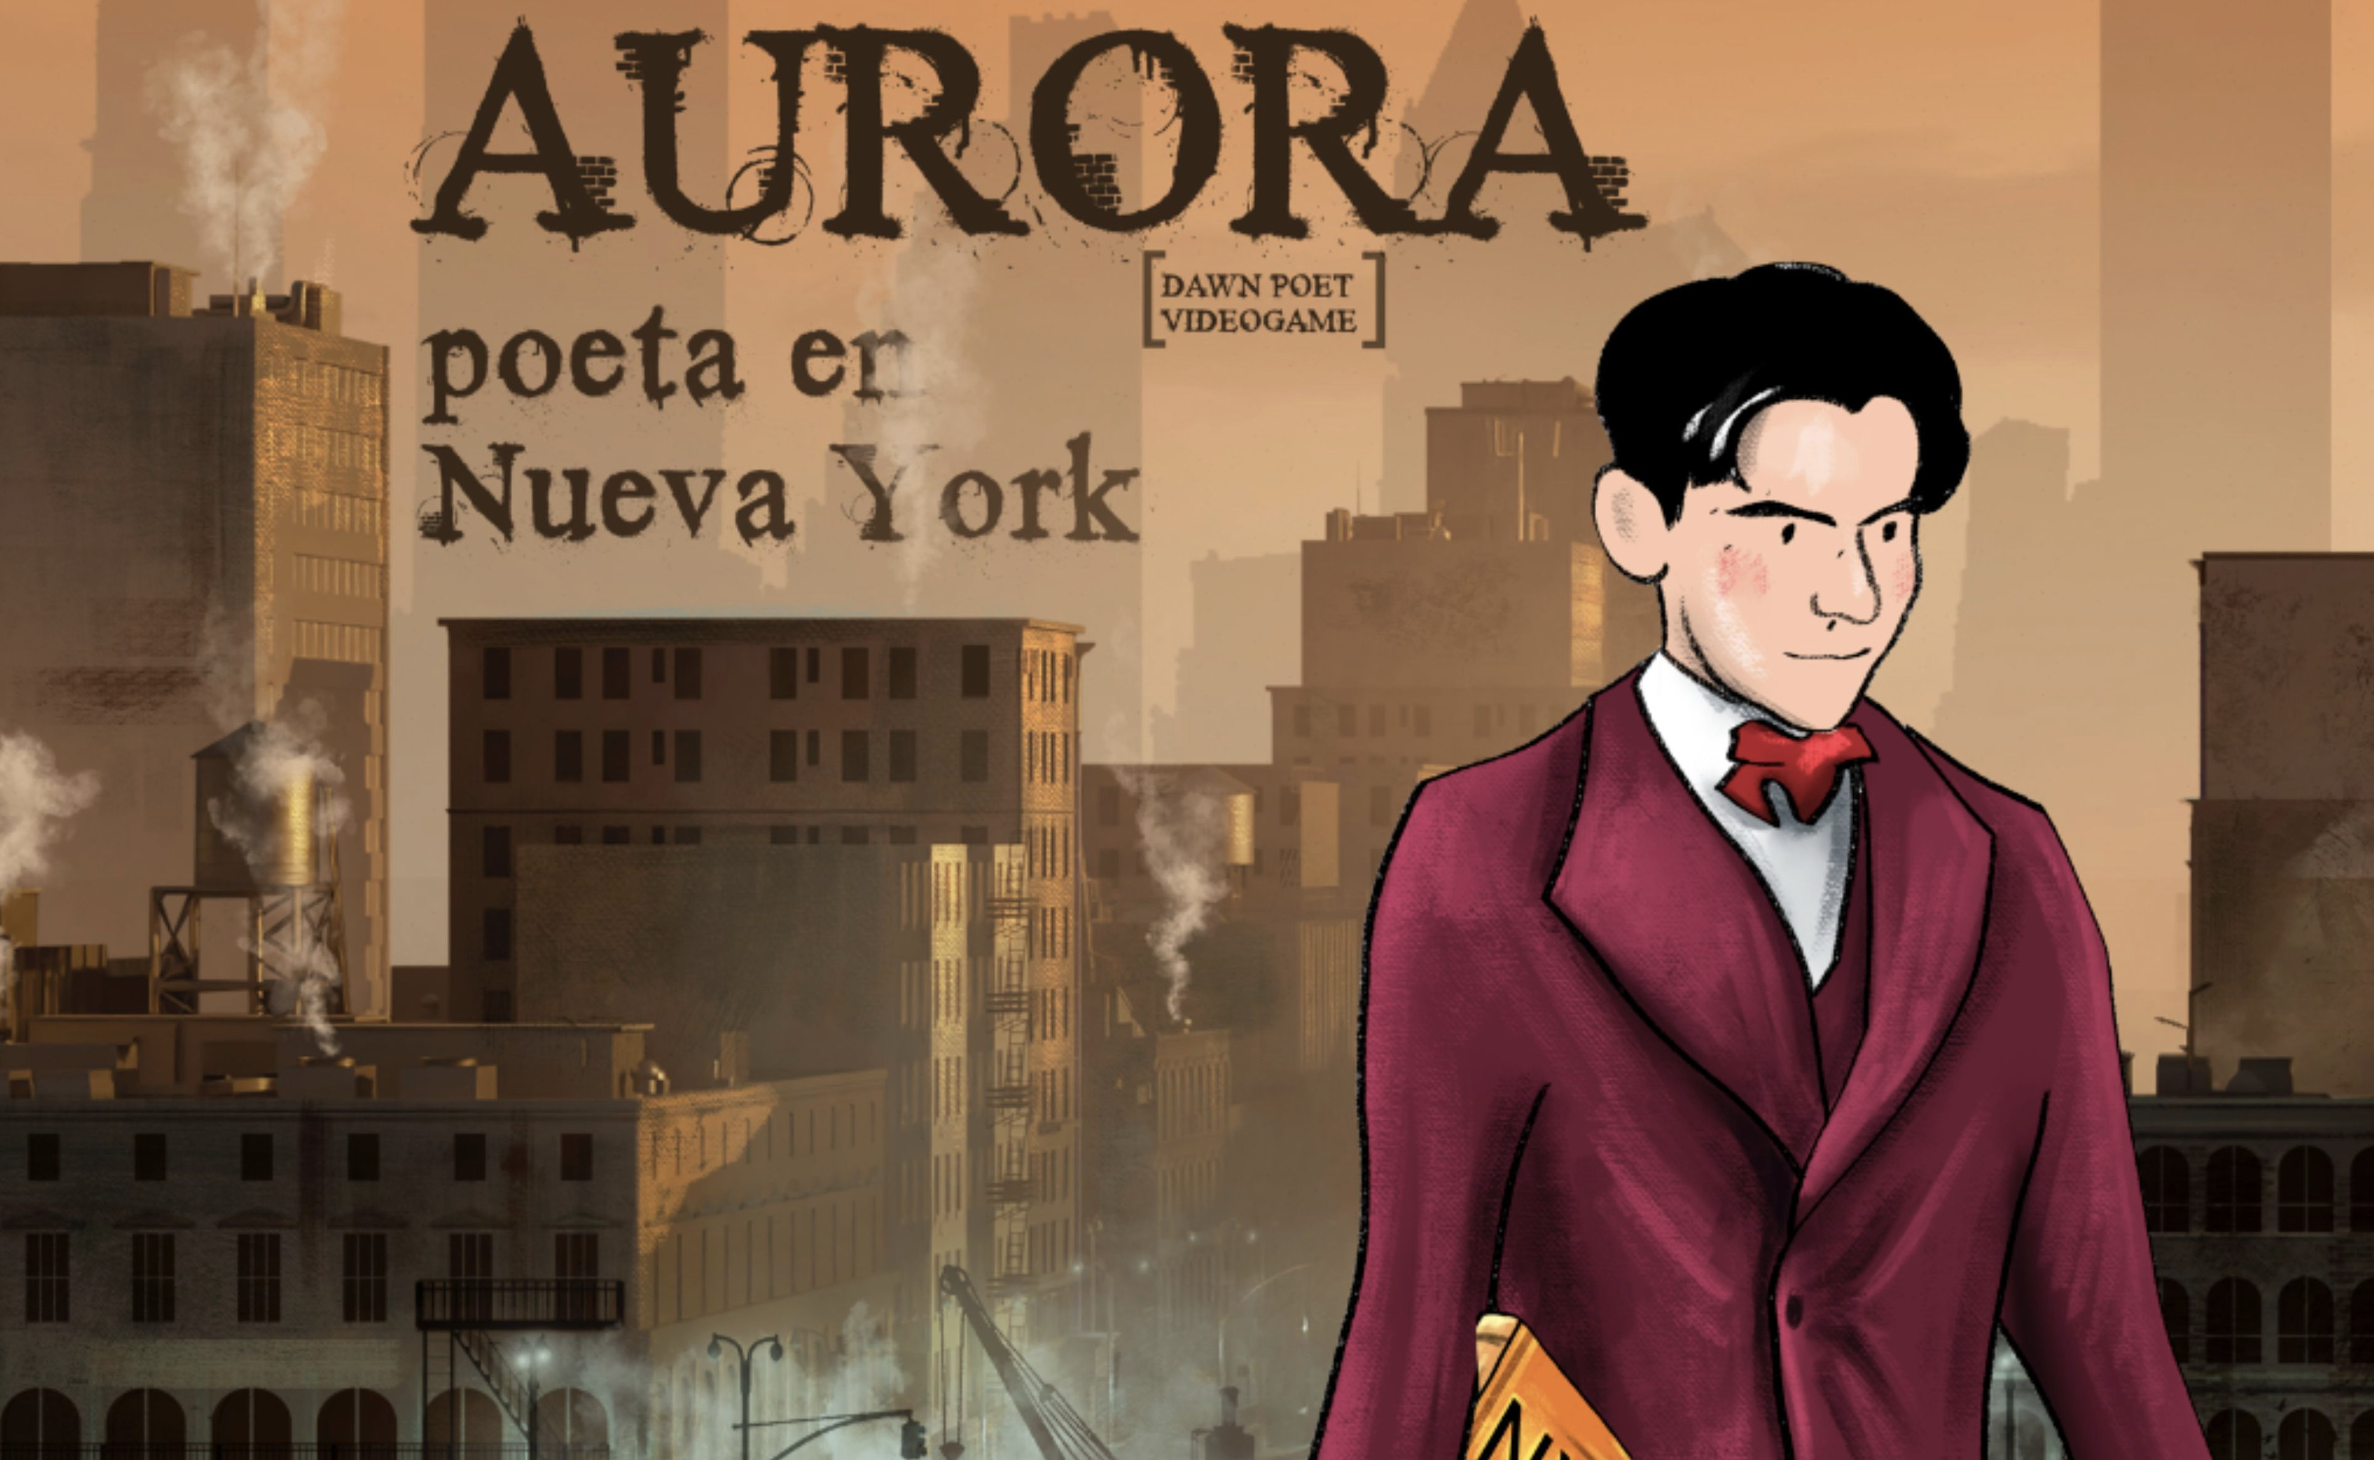 Jugar en la videoconsola a la aventura de ser Lorca en Nueva York. Imagen del videojuego dedicado al universo lorquiano.